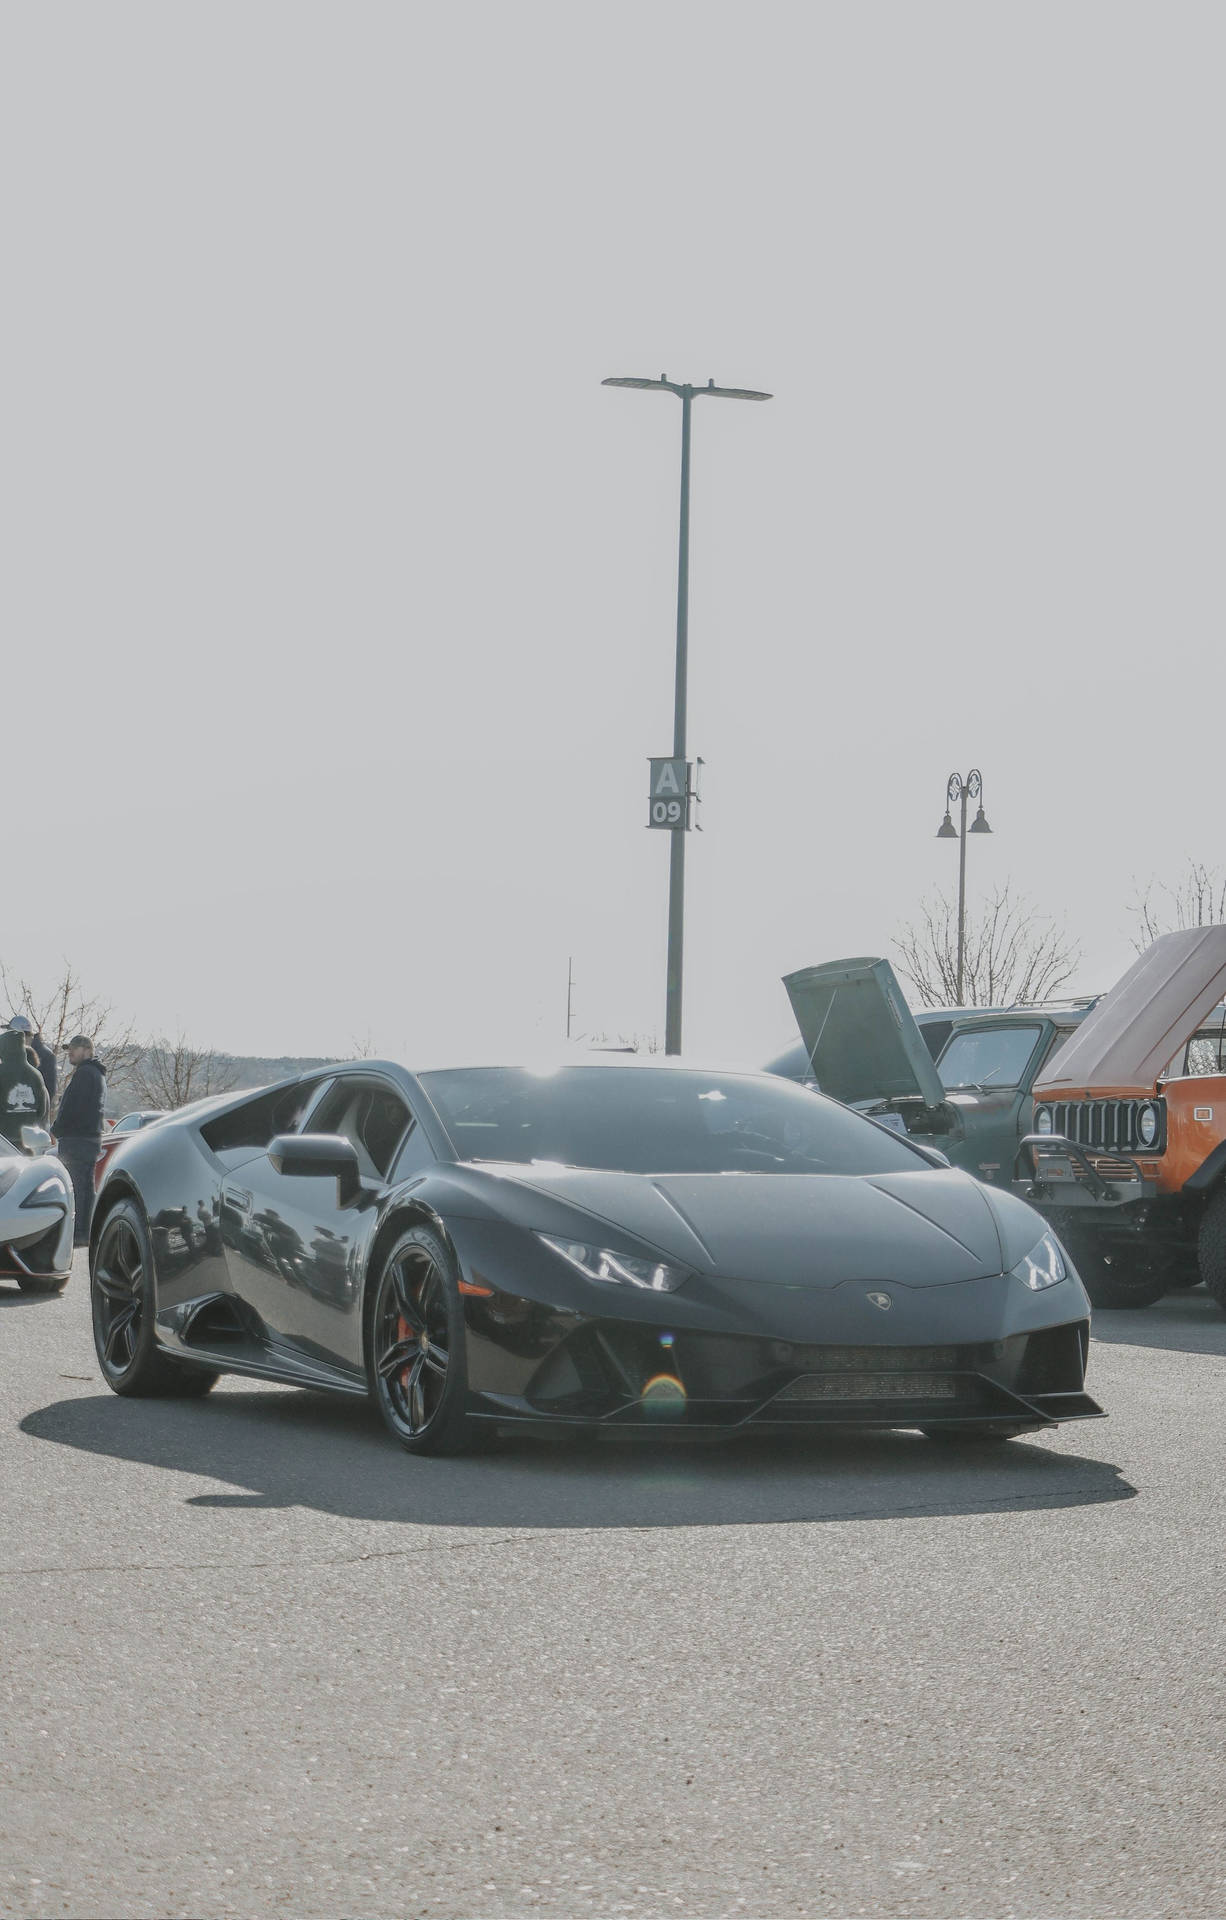 Einschwarzer Lamborghini Gt4 Parkte Auf Einem Parkplatz. Wallpaper